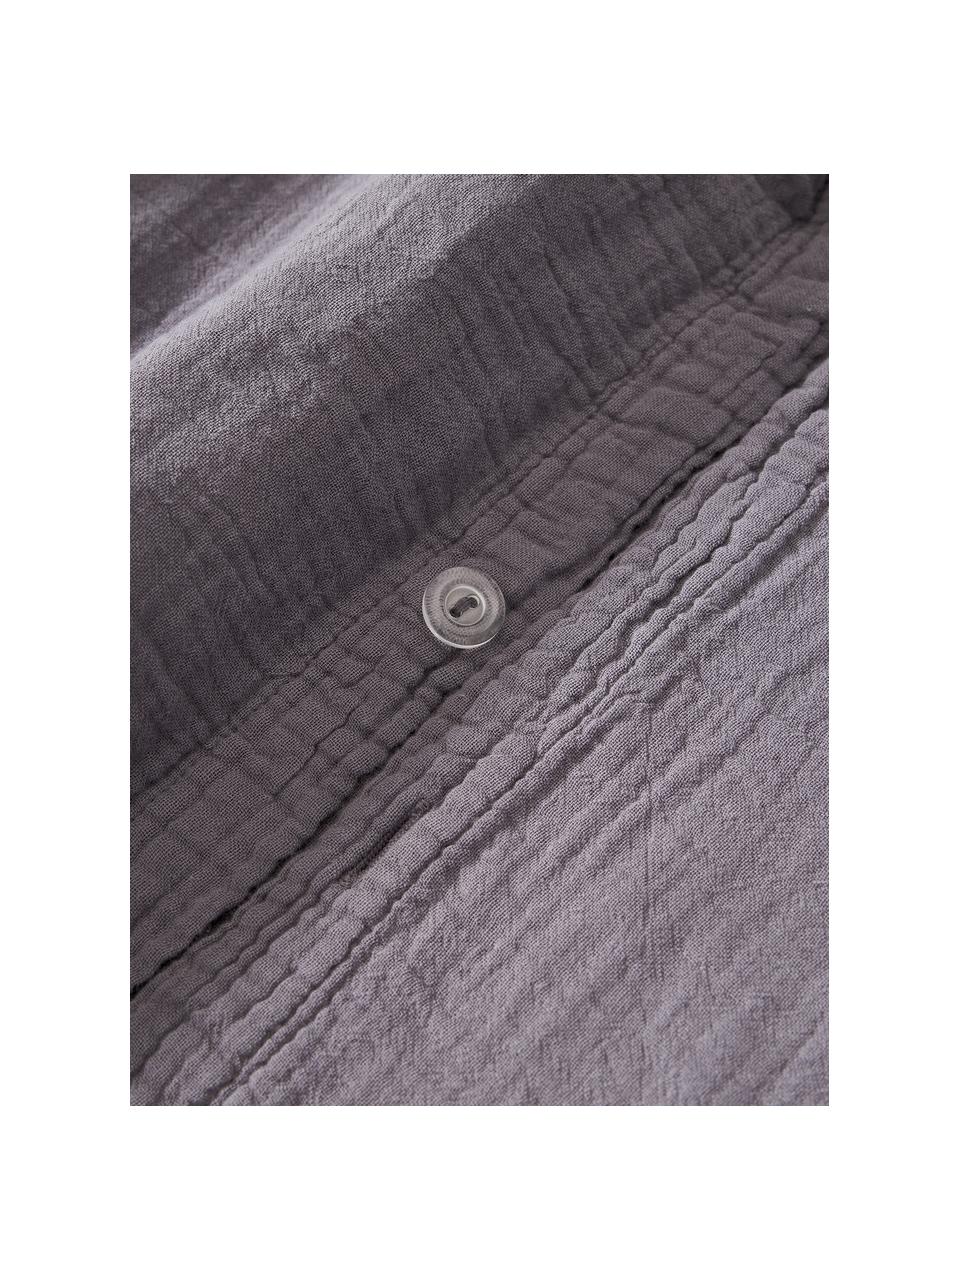 Poszwa na kołdrę z muślinu bawełnianego Odile, Ciemny szary, B 135 x L 200 cm